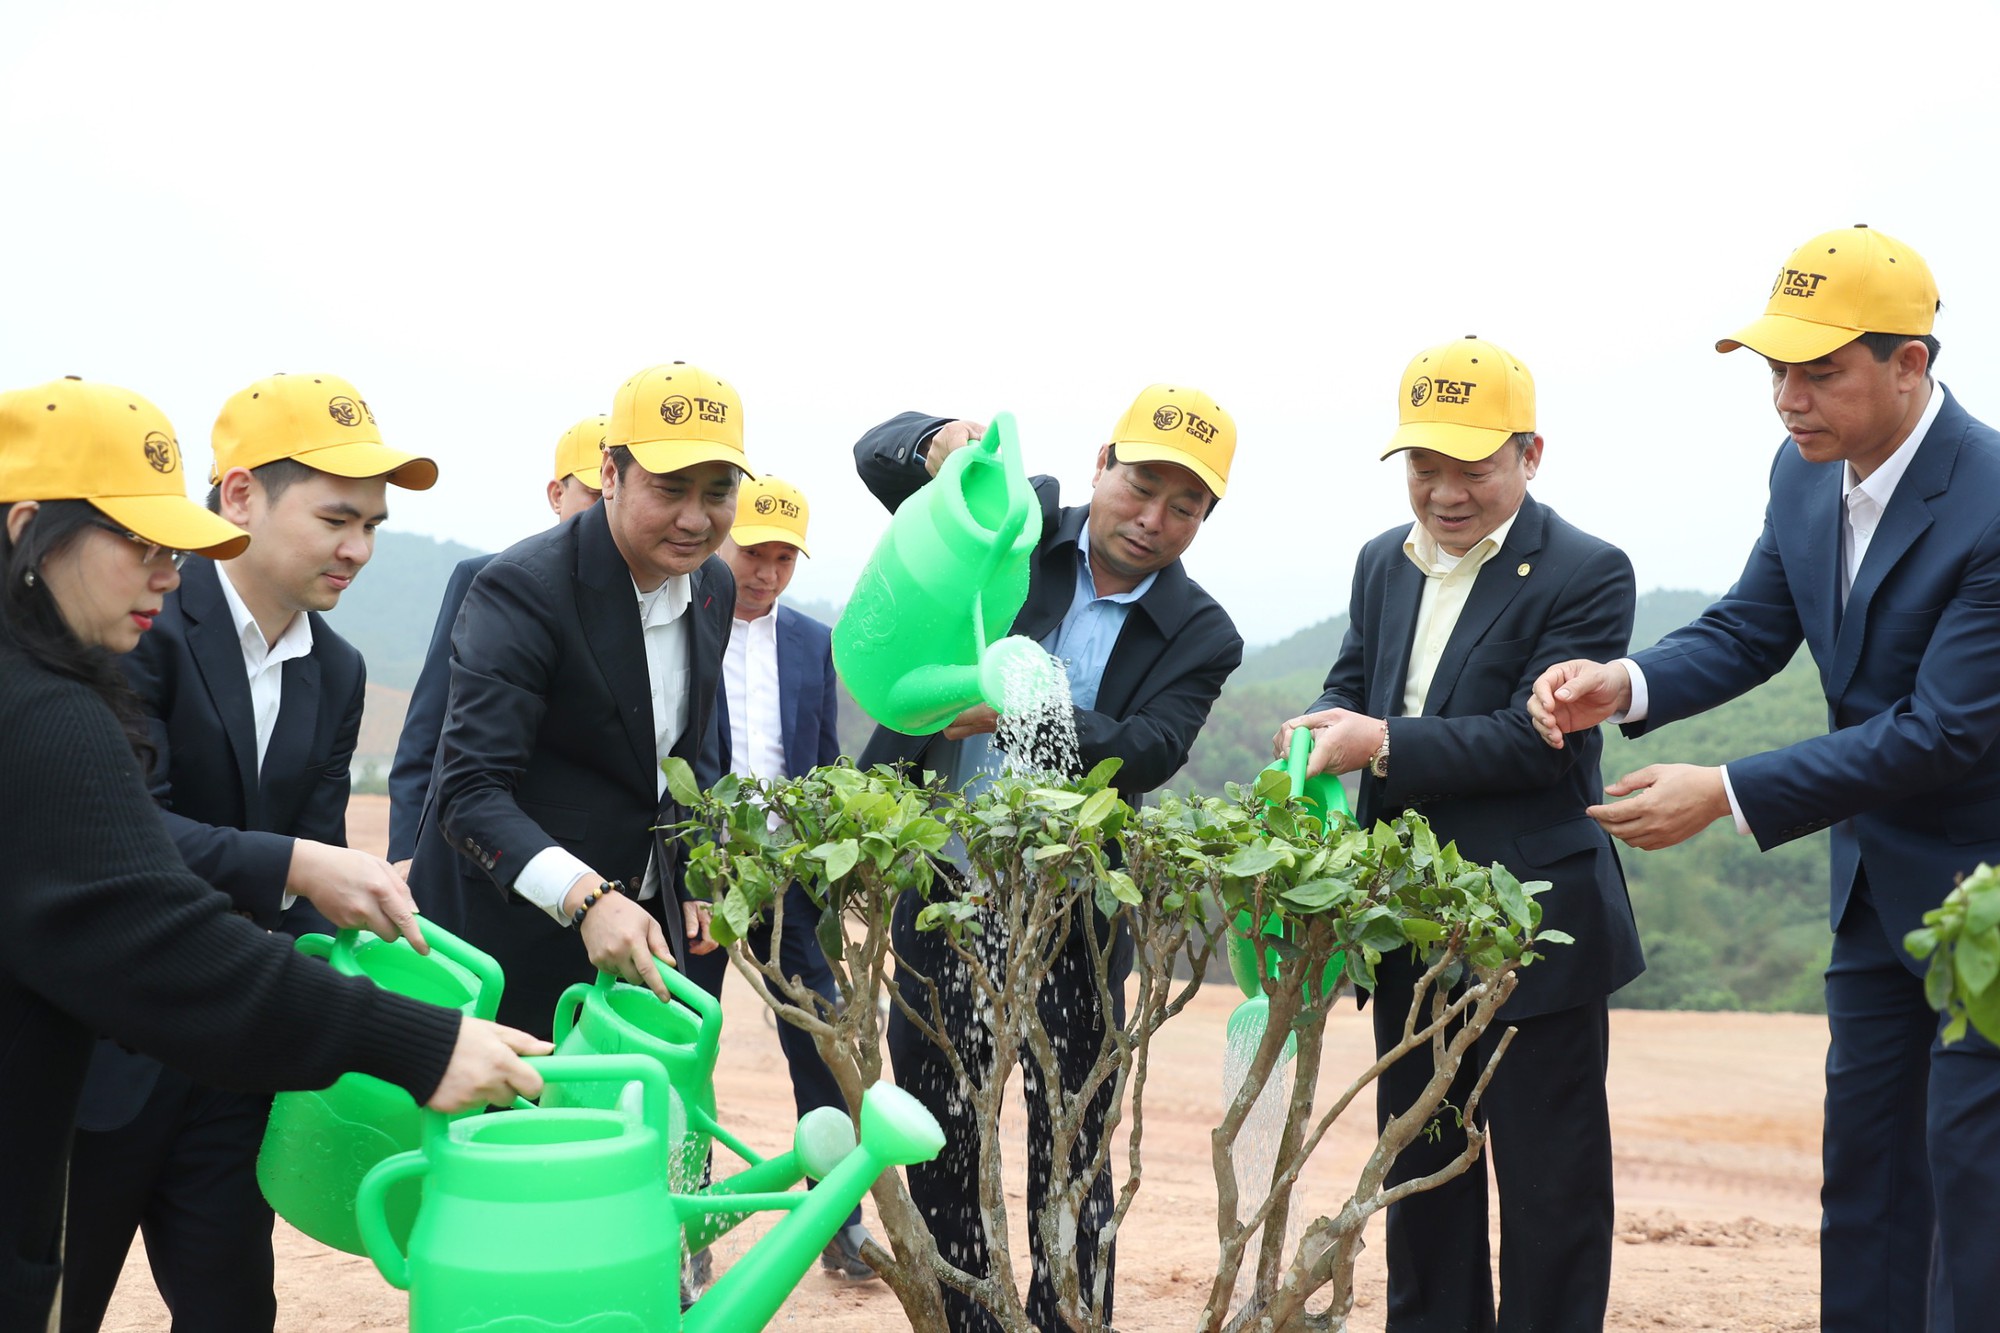 Phát động trồng cây phủ xanh 16 ha dự án sân golf tại tỉnh Phú Thọ - Ảnh 4.